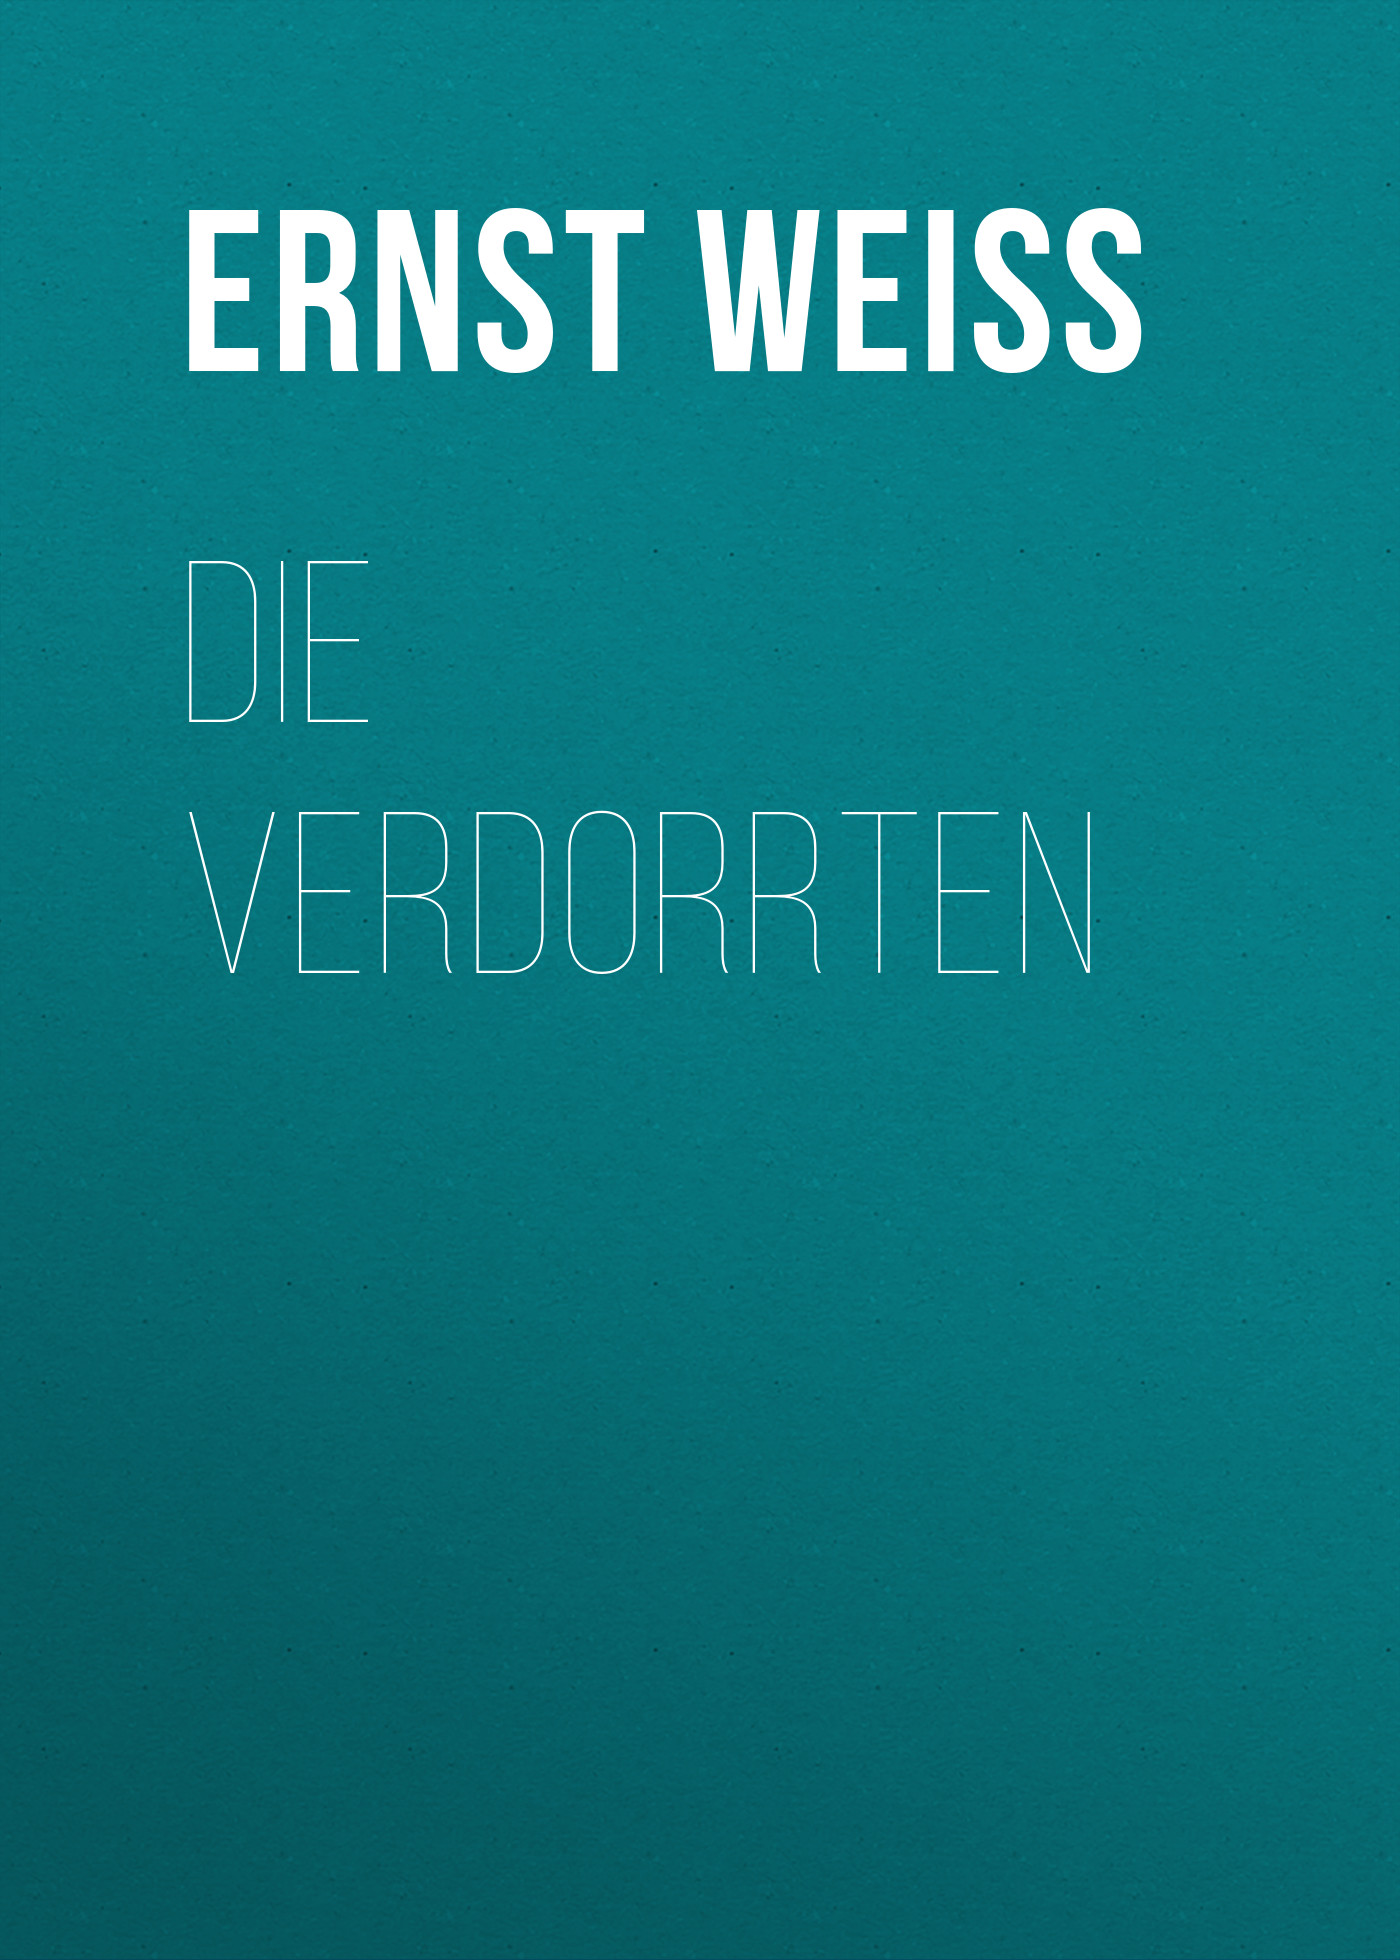 Книга Die Verdorrten из серии , созданная Ernst Weiss, может относится к жанру Зарубежная классика, Зарубежная старинная литература. Стоимость электронной книги Die Verdorrten с идентификатором 34337522 составляет 0 руб.